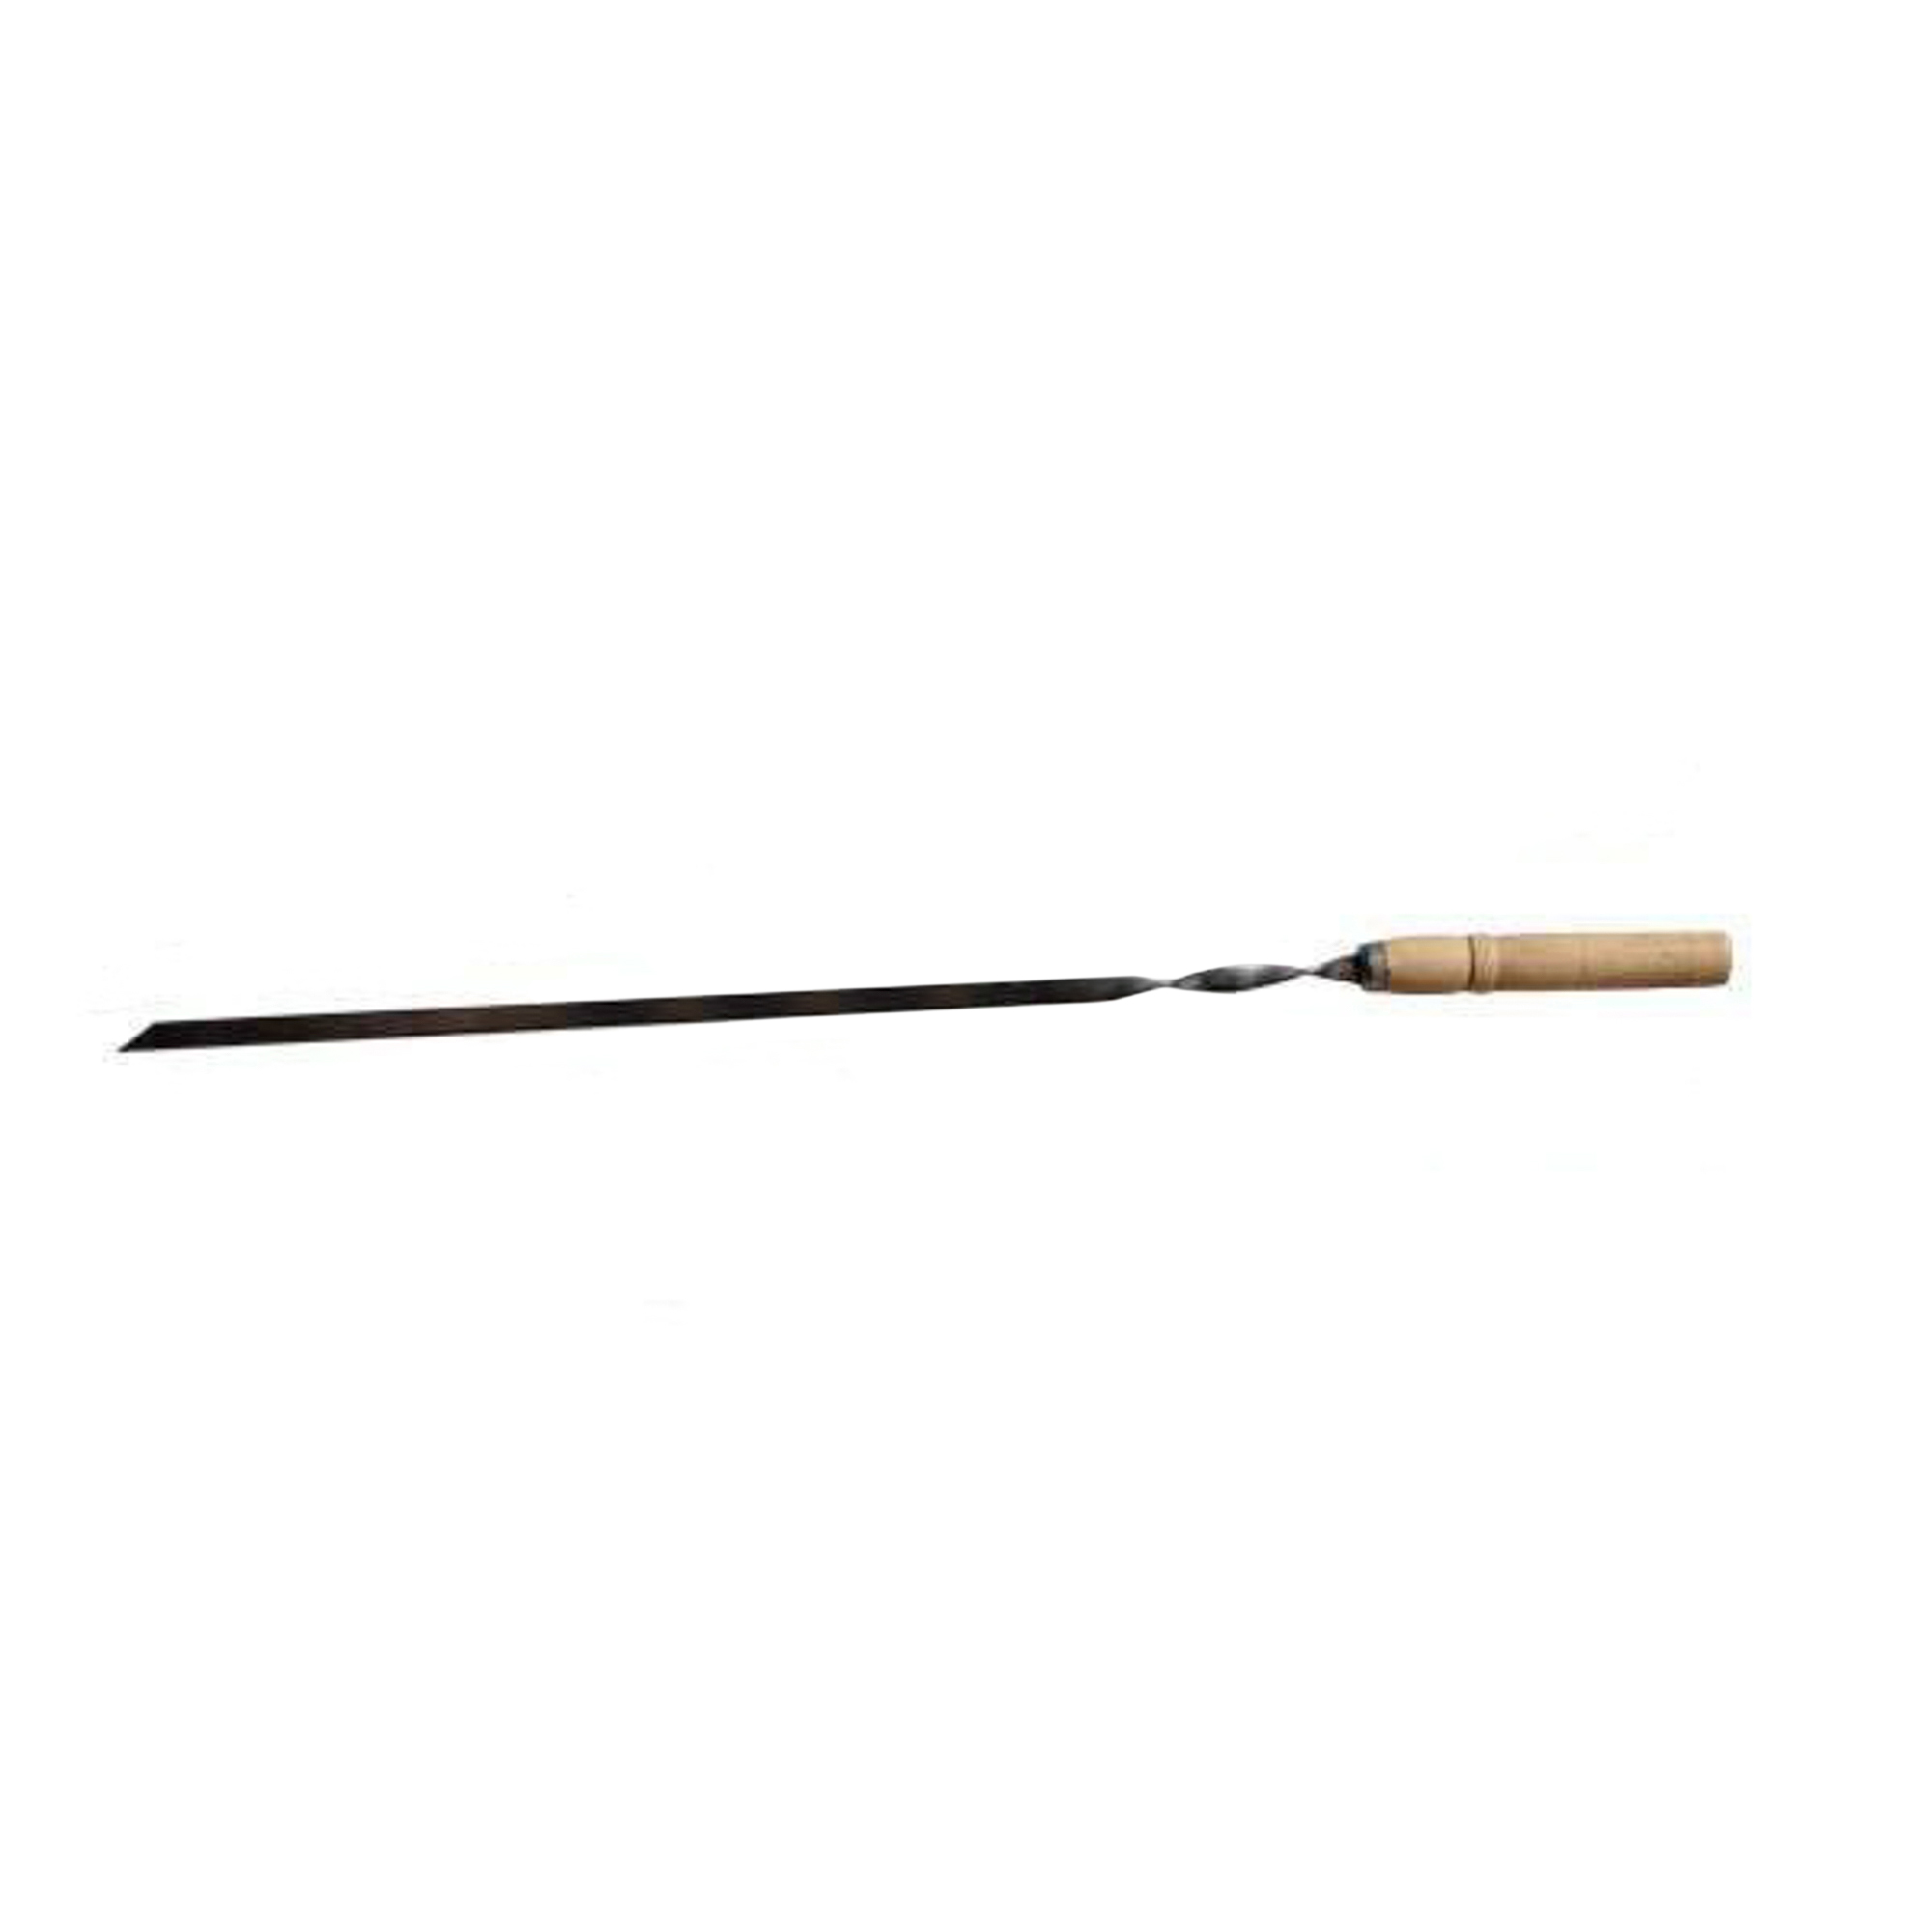 Шампур металлический Аск-38 с деревянной ручкой 55 см (14064) шампур металлический для тандыра аск 38